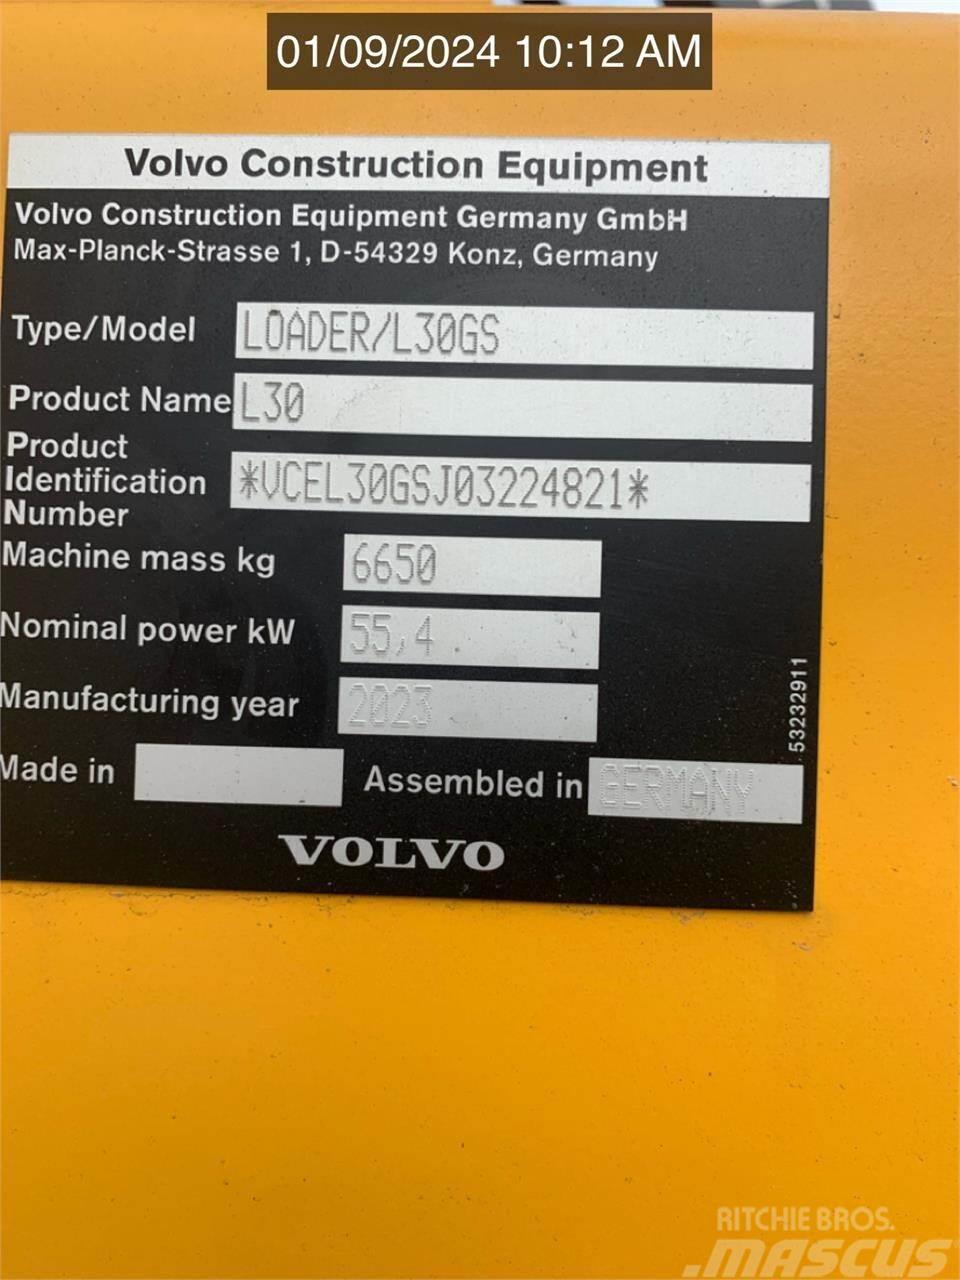 Volvo L30GS Pás carregadoras de rodas